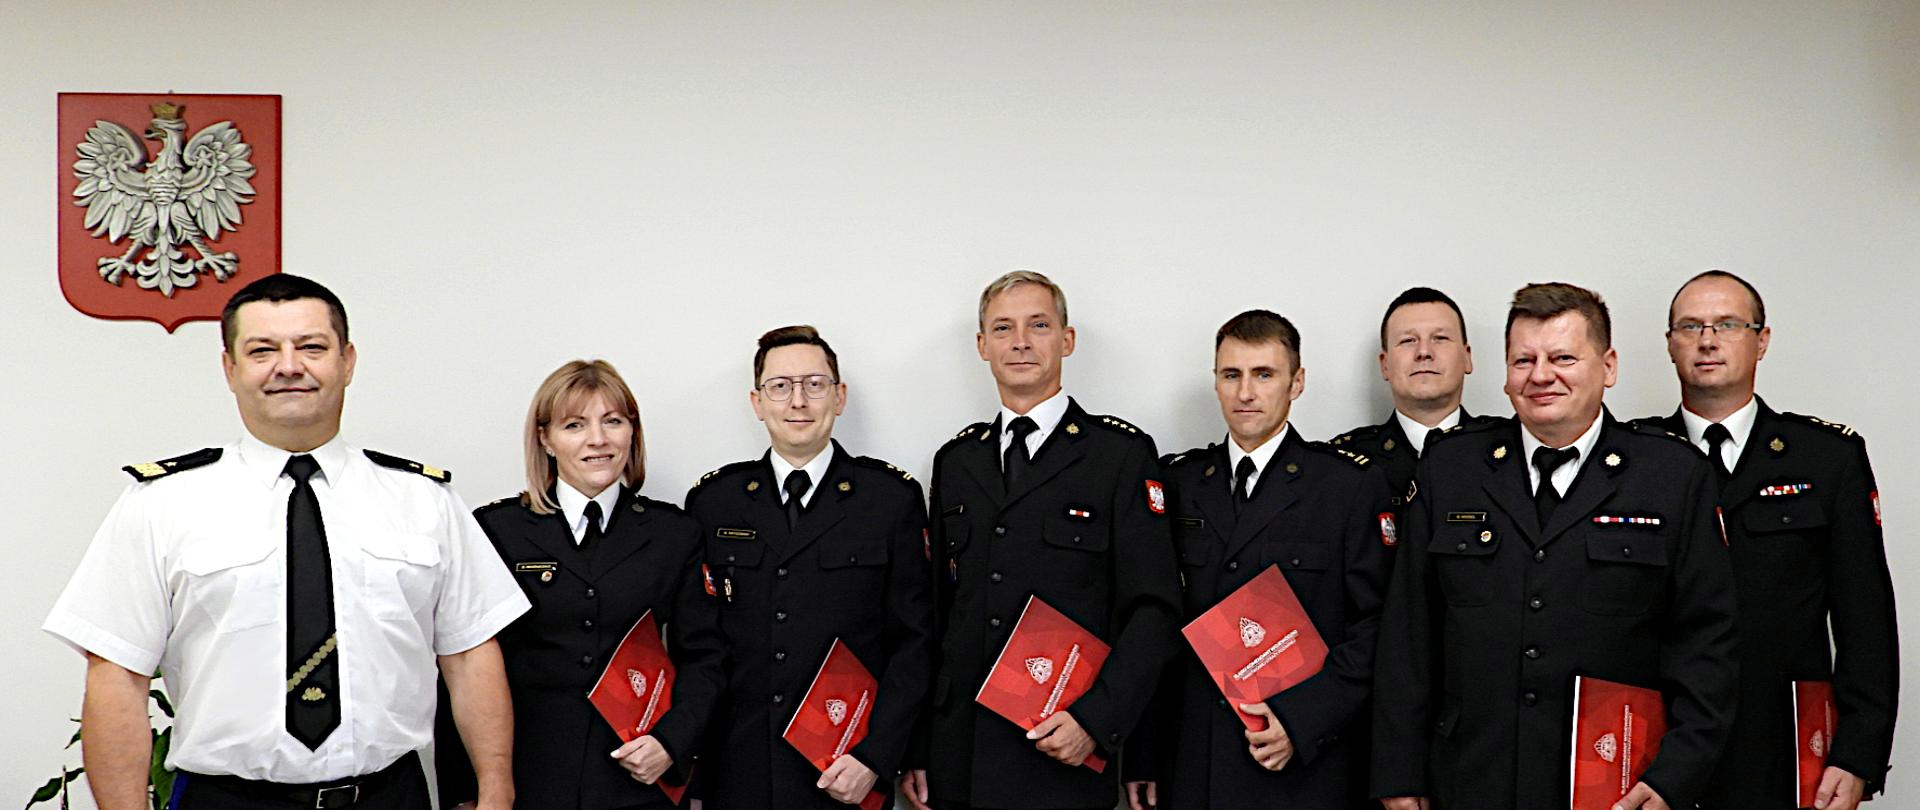 Na zdjęciu śląski komendant wojewódzki nadbryg. Jacek Kleszczewski wraz z członkami Komisji Dyscyplinarnej. Funkcjonariusze ubrani są w czarne mundury wyjściowe, w rekach trzymają podziekowania w czefrwonych teczkach.